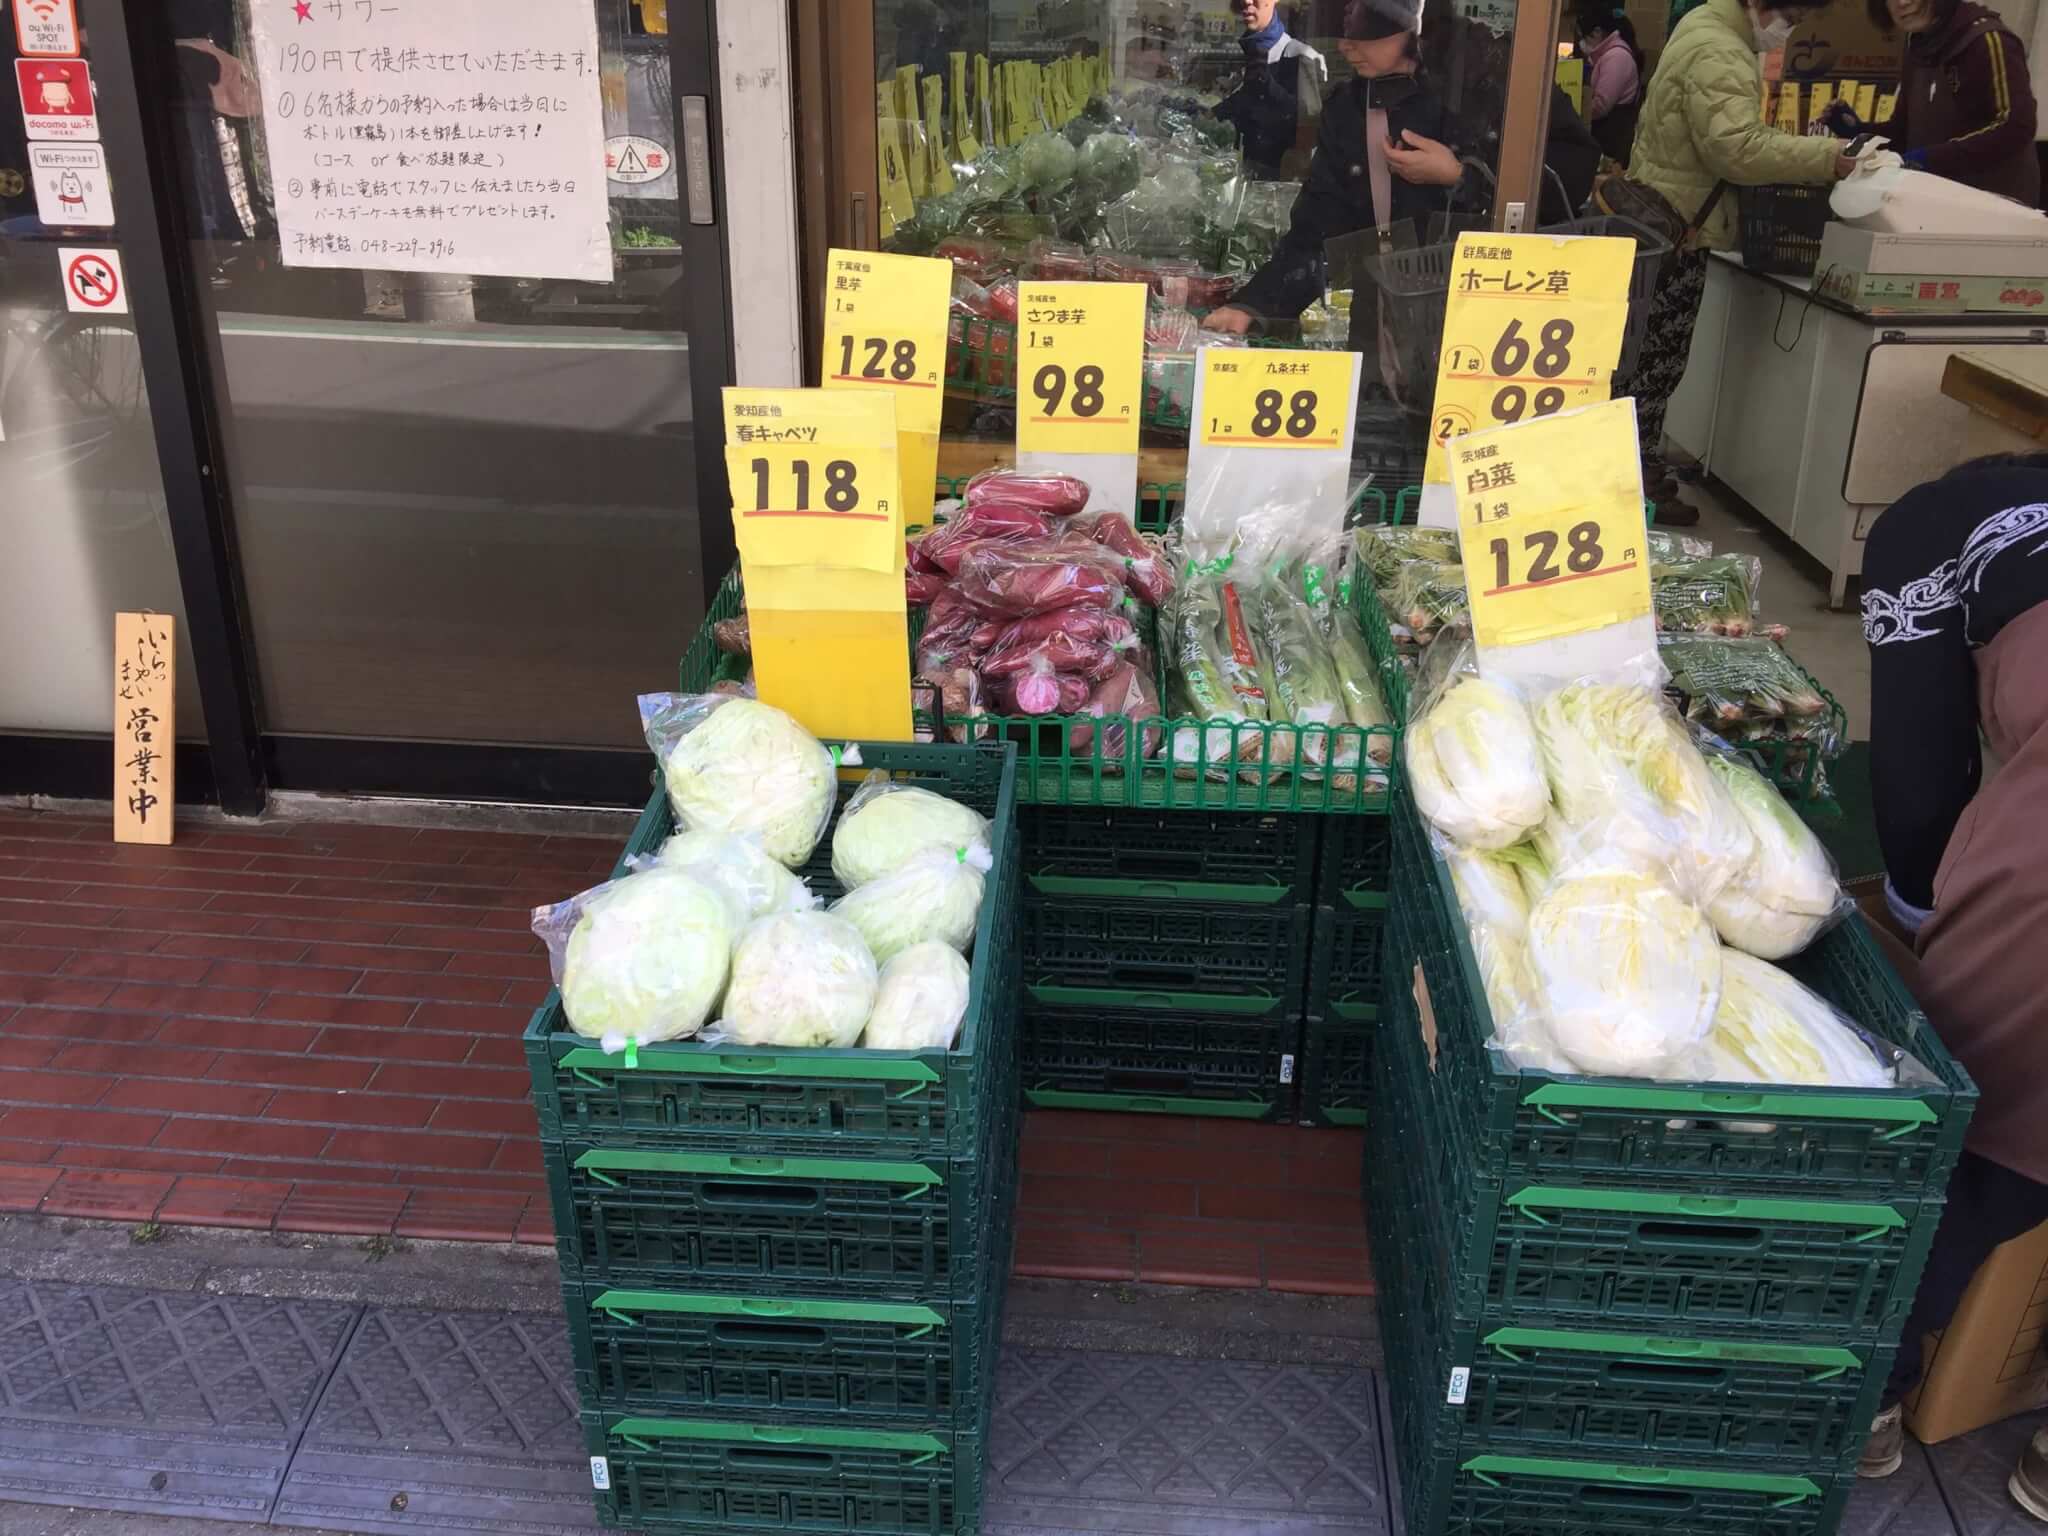 西川口のスーパーふるさとで売られている激安野菜